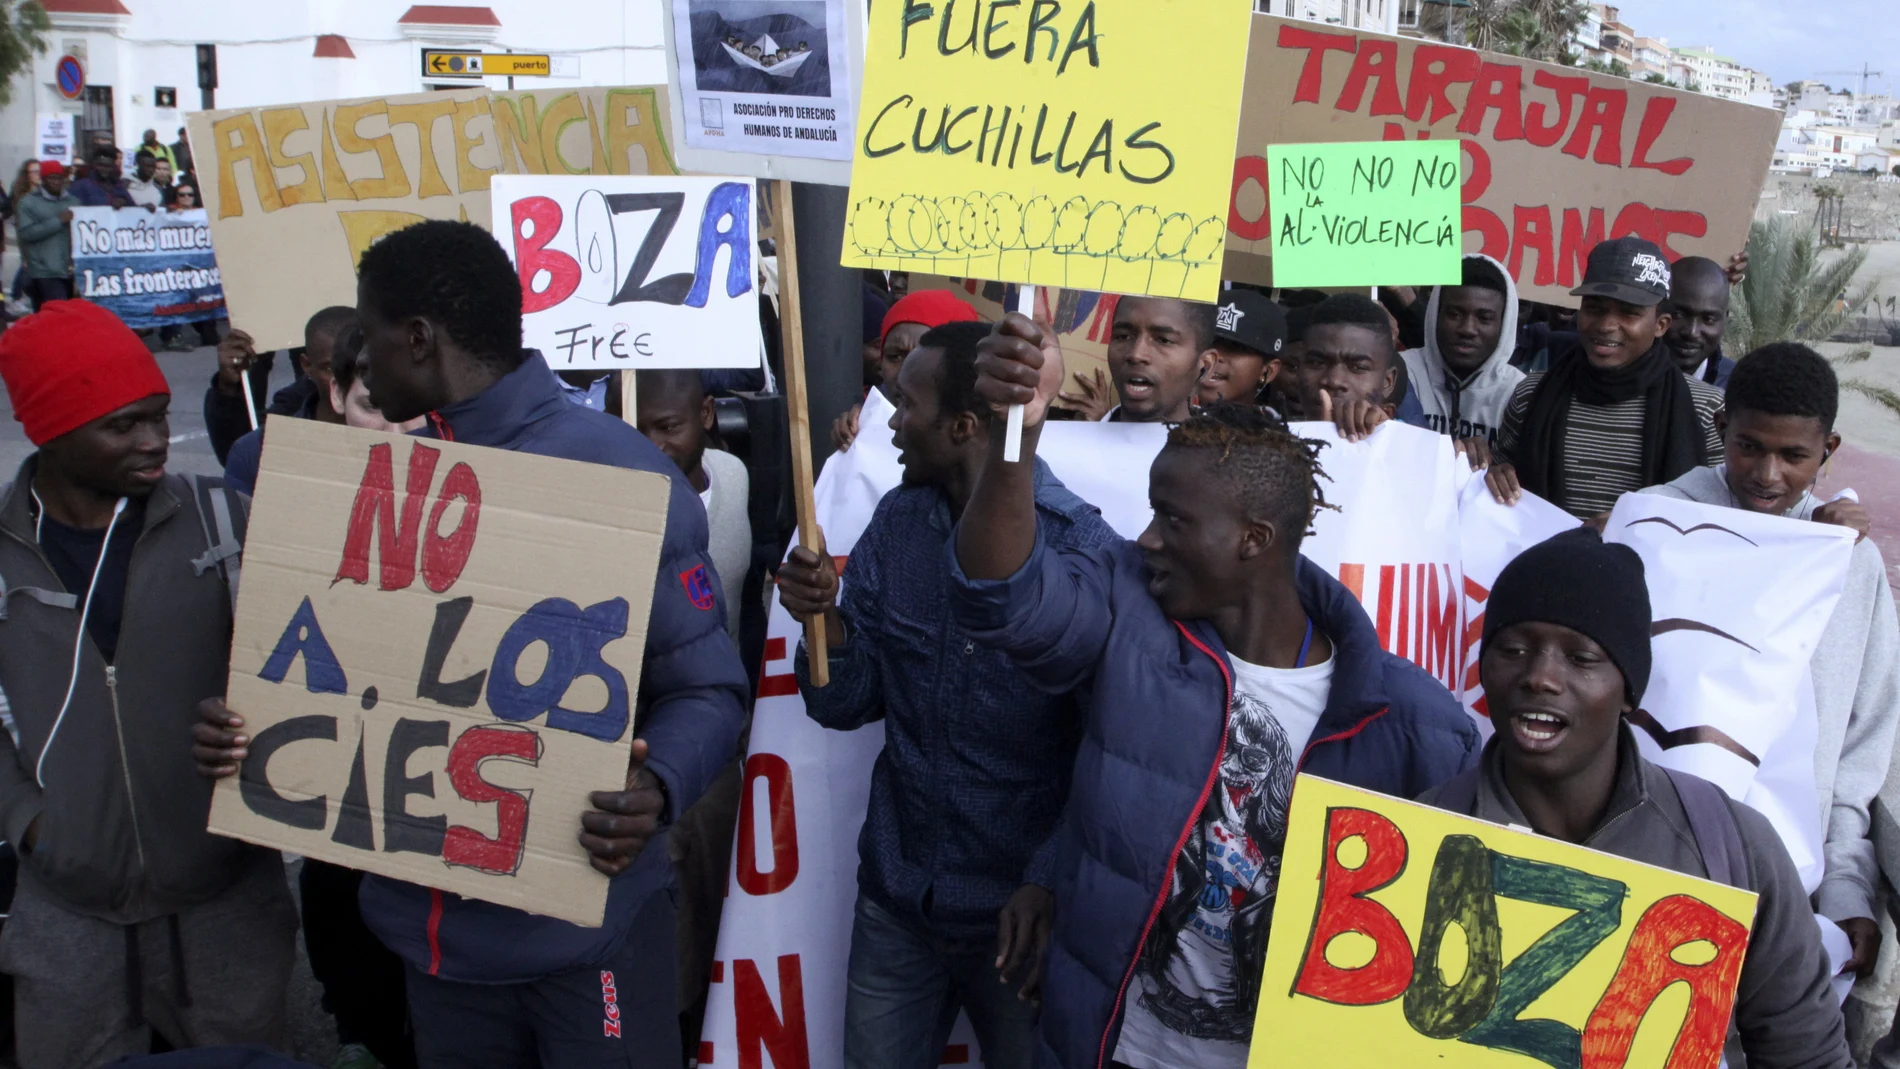  Marcha solidaria por los 15 migrantes que fallecieron en la playa del Tarajal de Ceuta en 2014